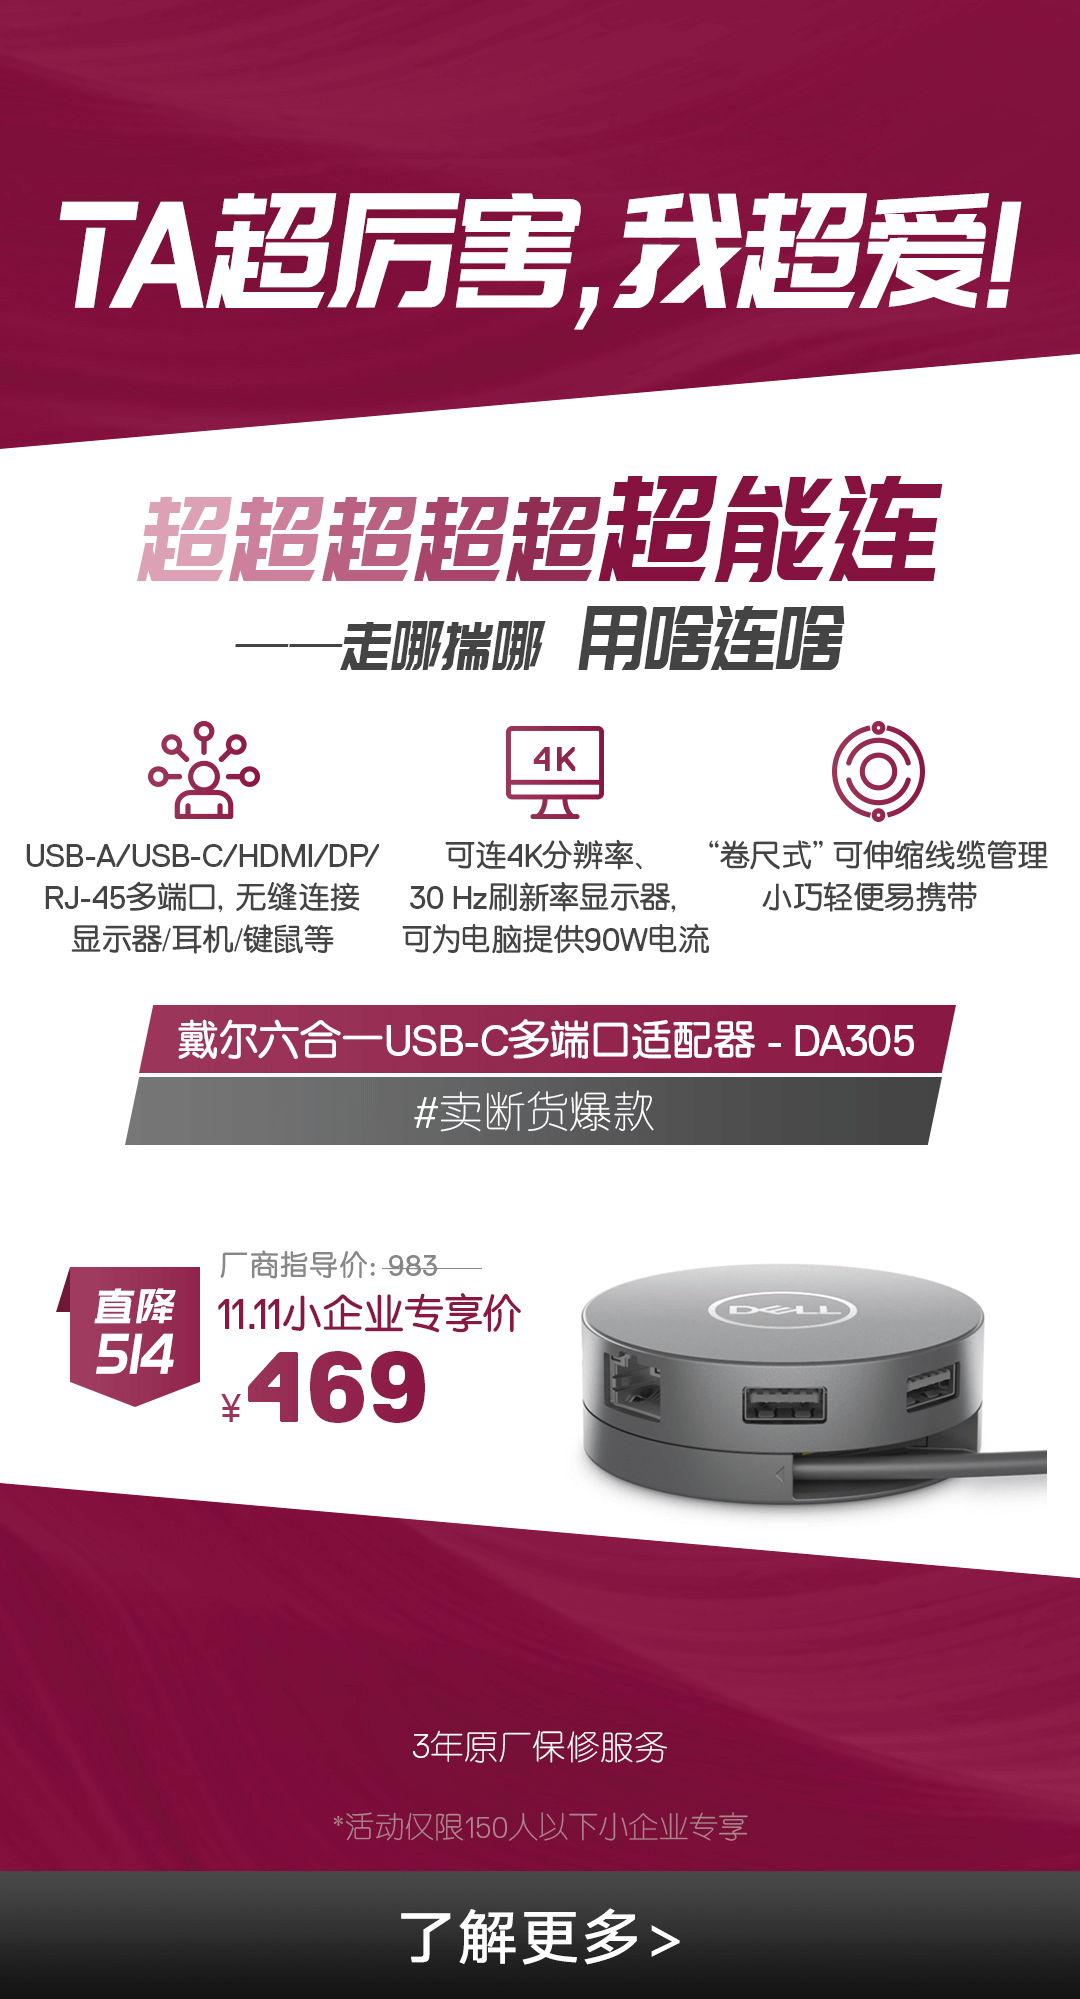 戴尔六合一USB-C多端口适配器- DA305